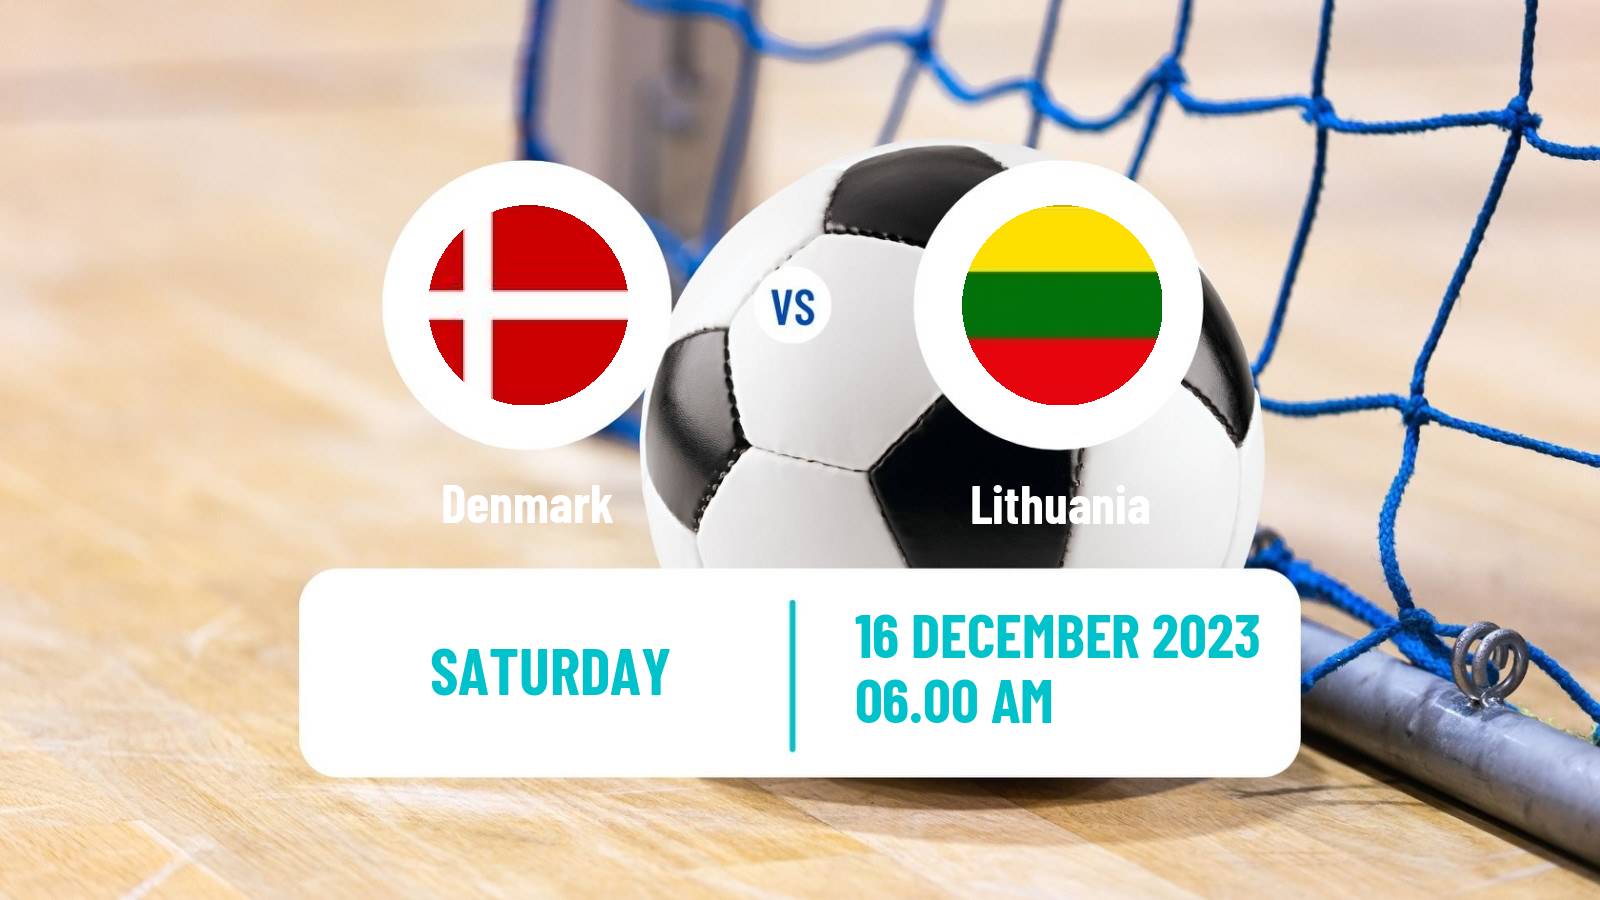 Futsal Friendly International Futsal Denmark - Lithuania